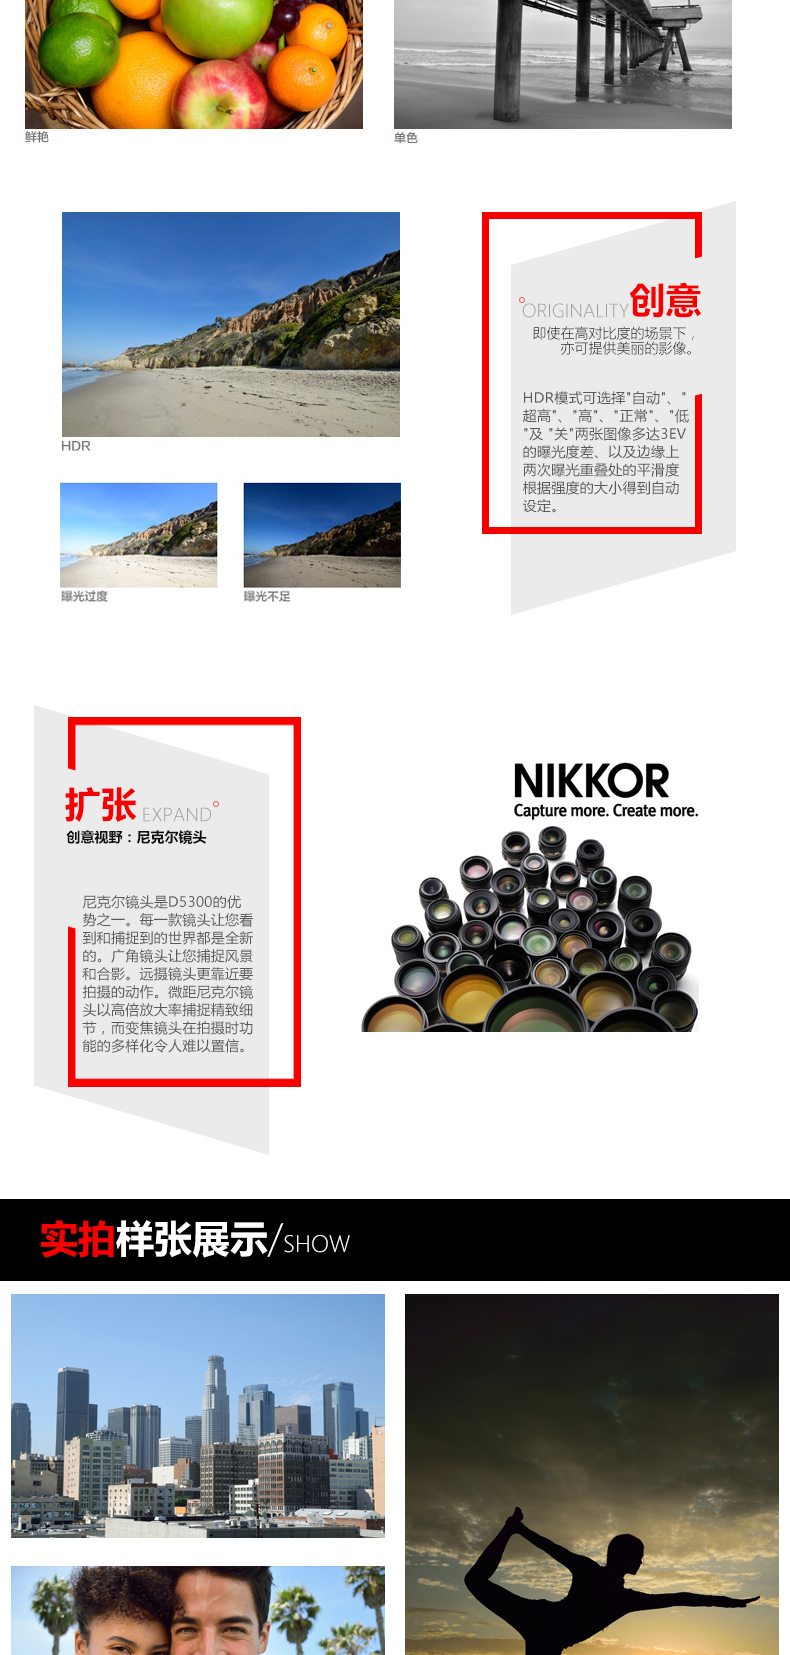 尼康(Nikon) D5300（腾龙18-270mm）镜头套装 广角防抖 2416万像素 翻转屏 WIFI功能